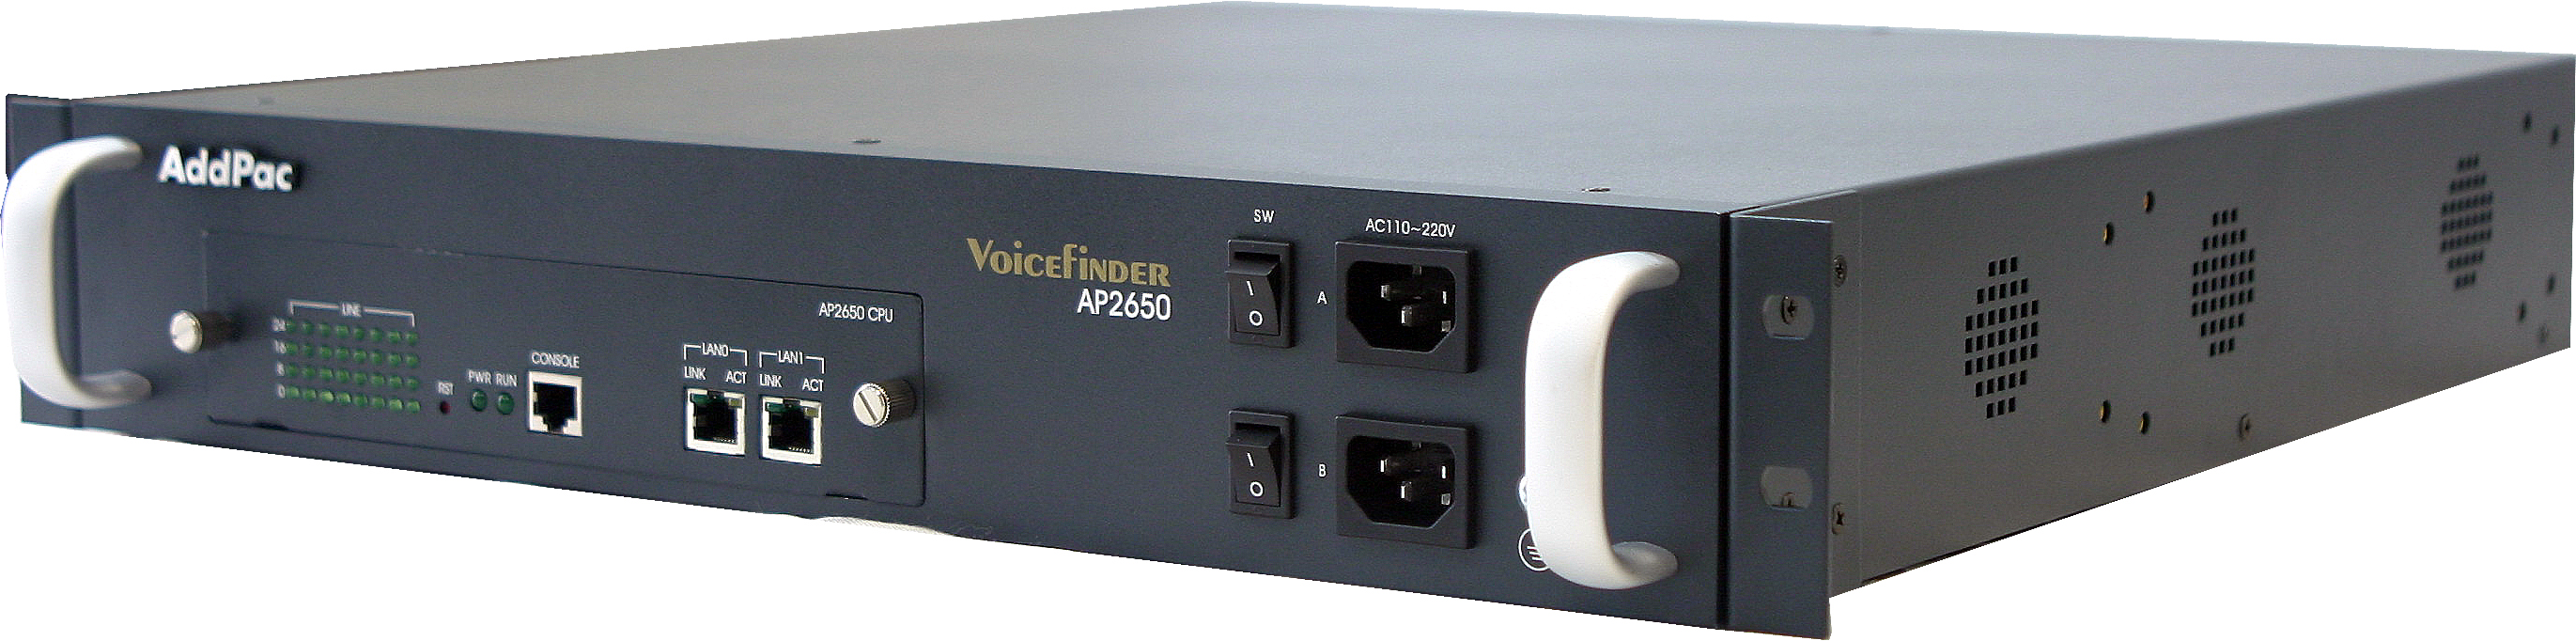 AddPac	ADD-AP2650-24S - Шлюз  (24 FXS, 2x10/100Mbps ETH, Dual PSU), (Boundle)